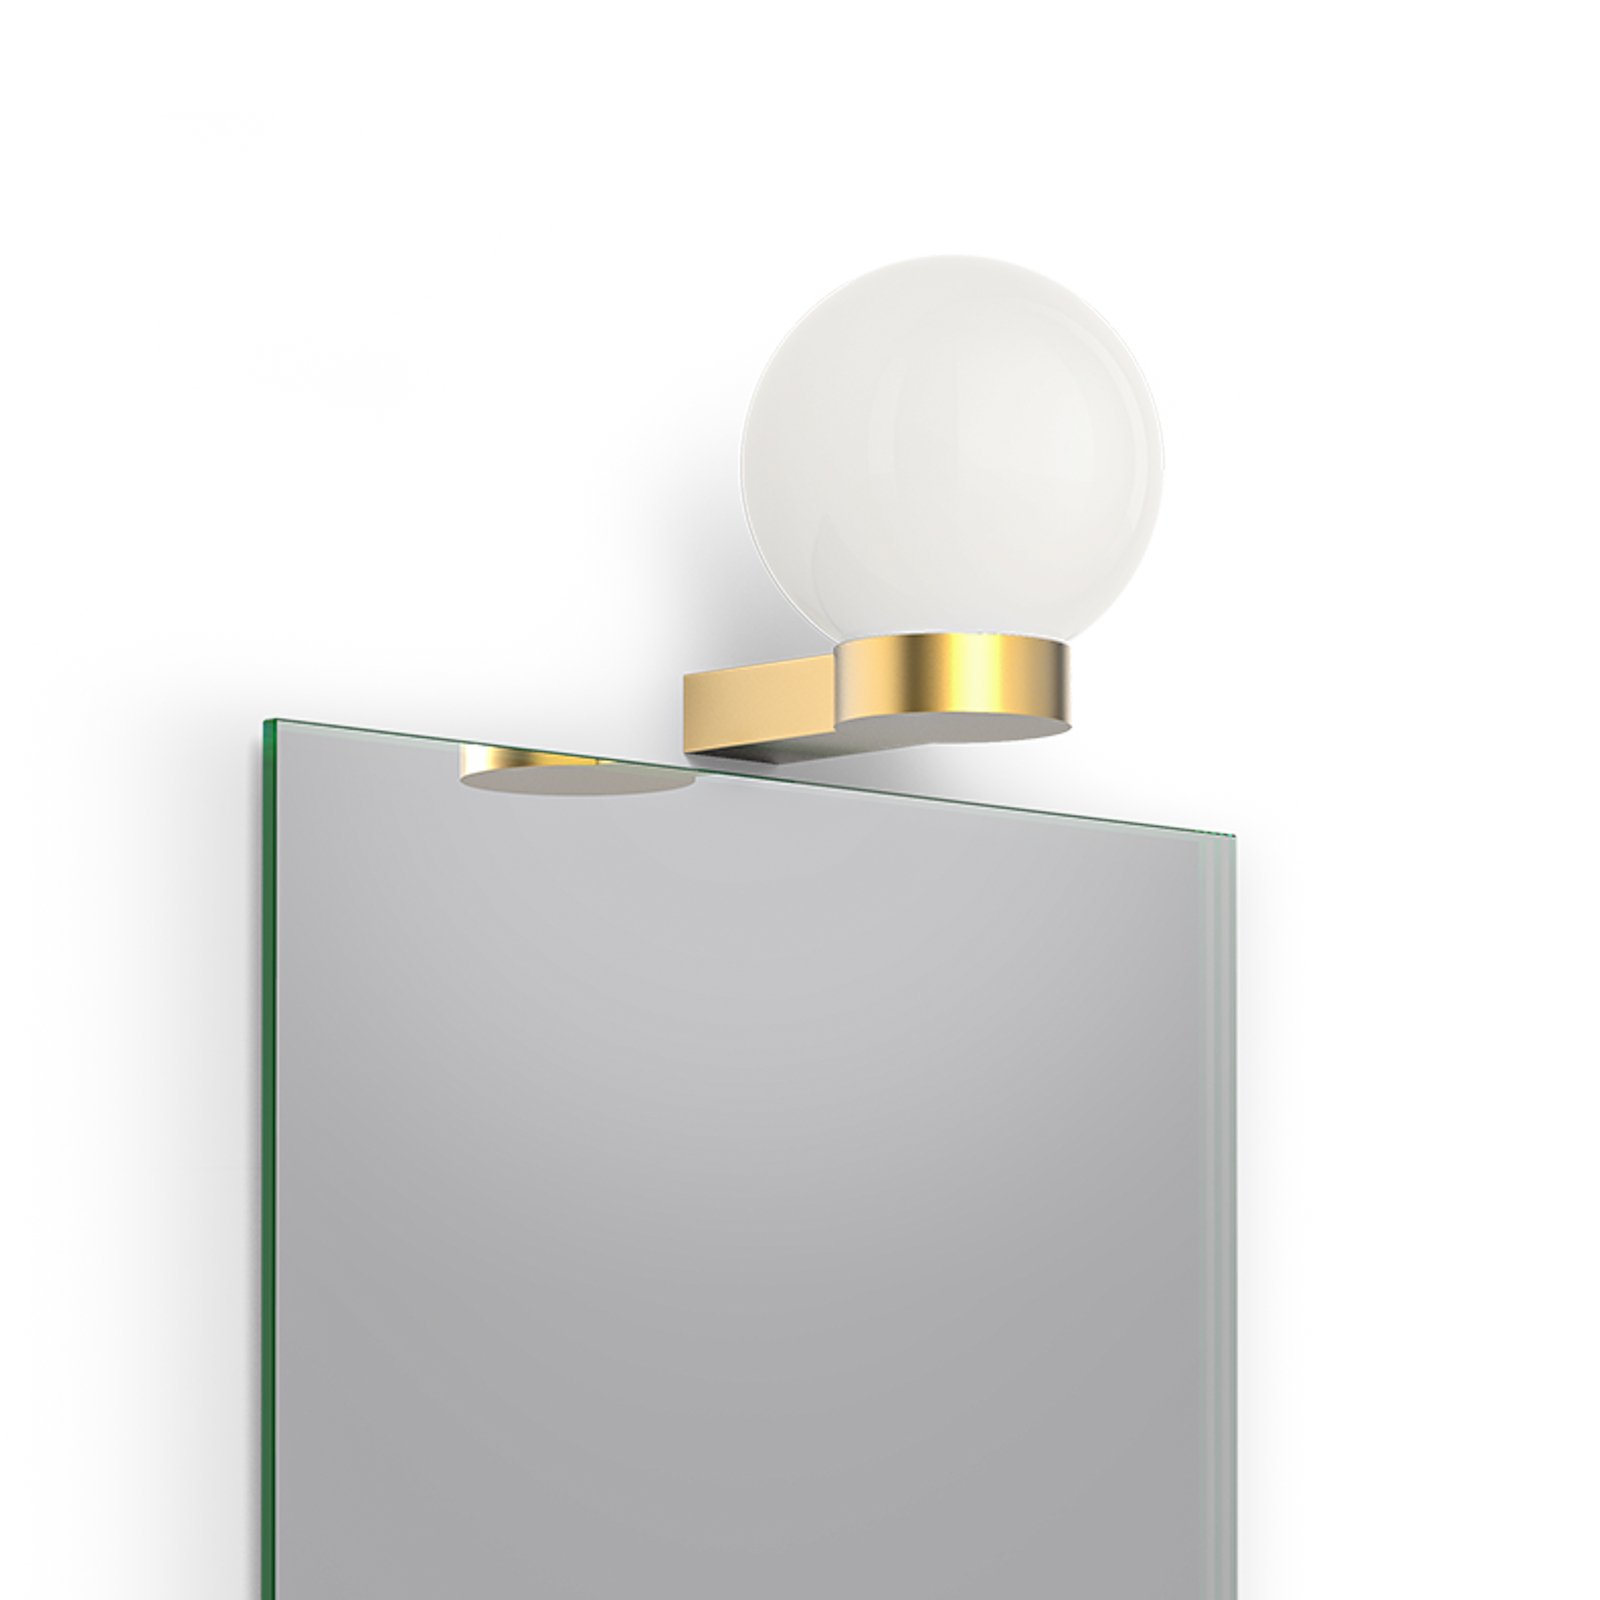 Decor Walther Bar Light wandlamp, goud mat